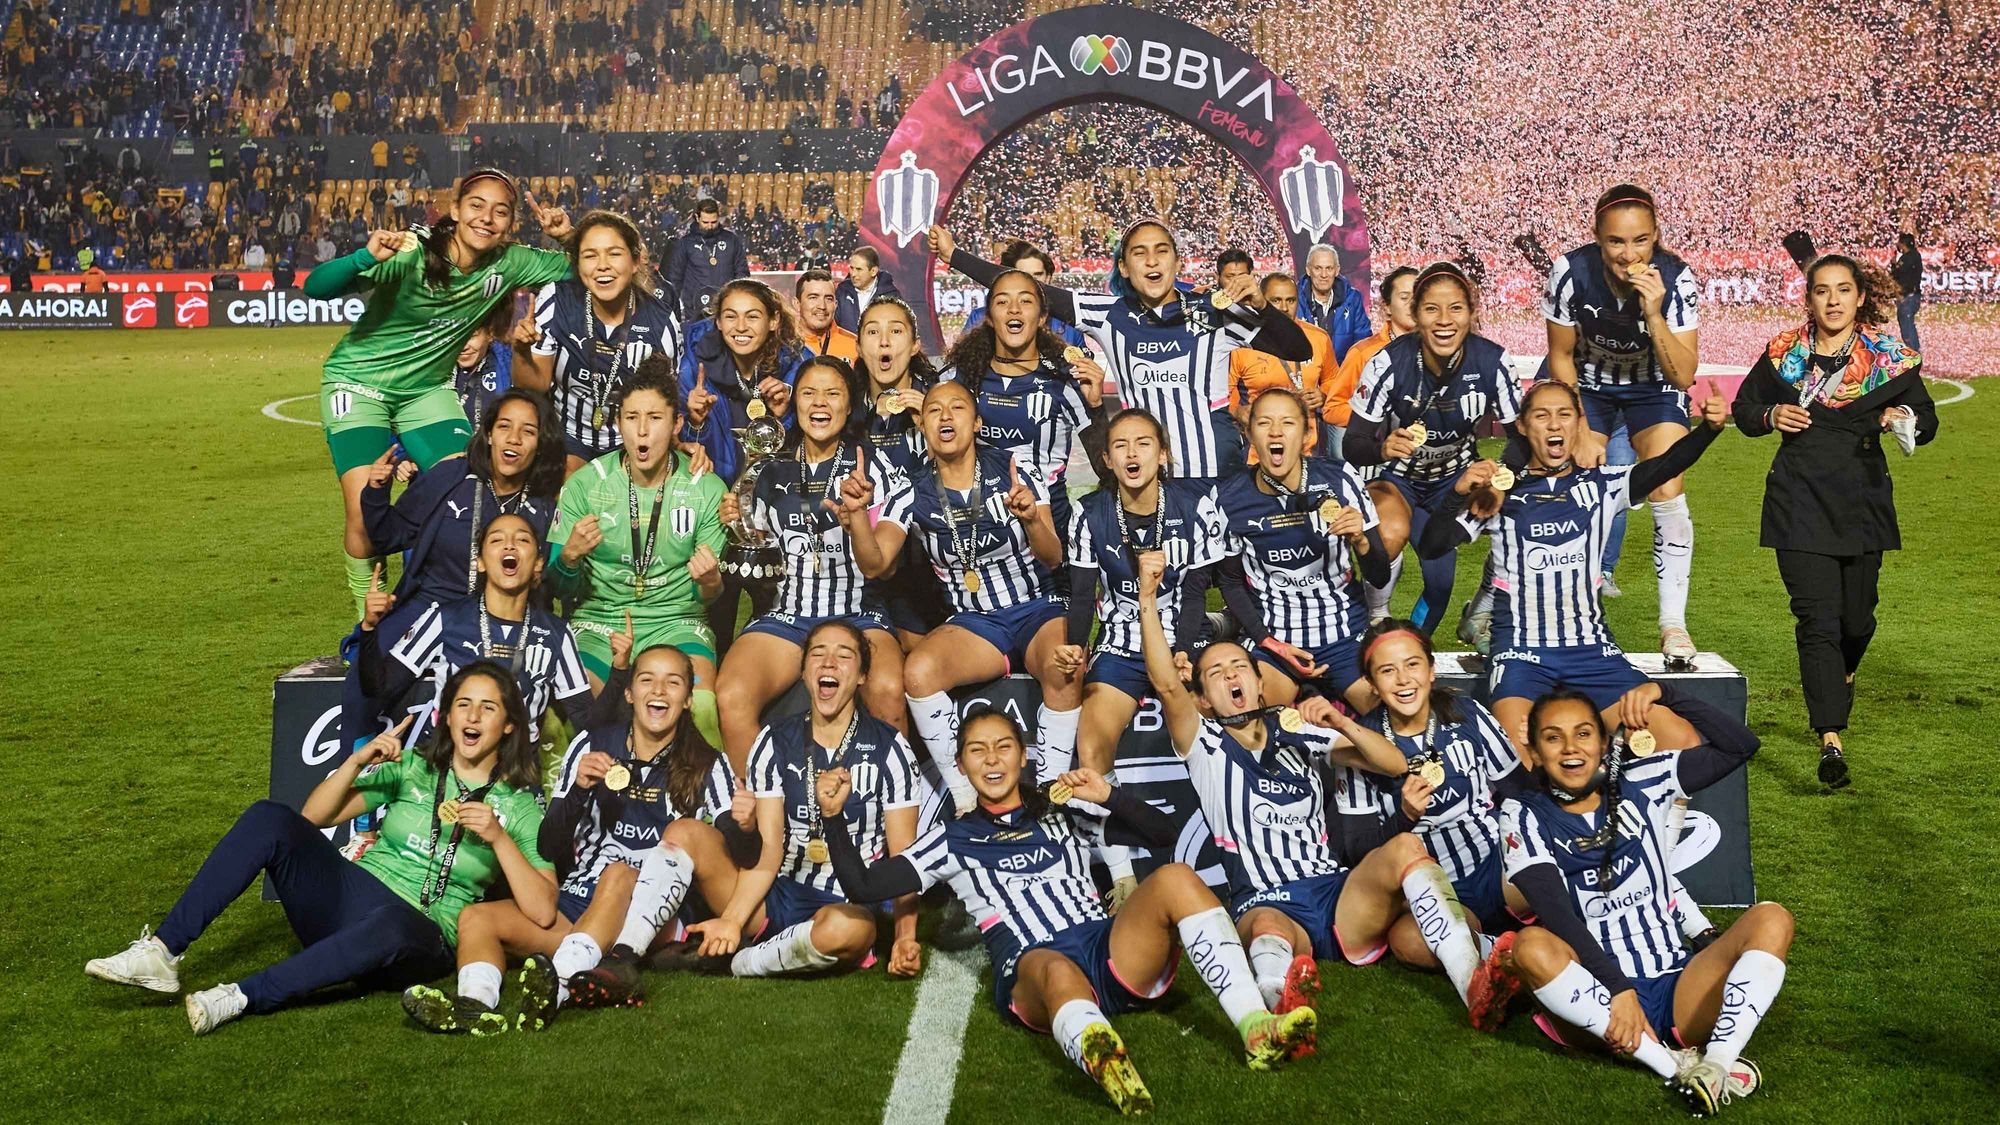 Tras un 0-0, las de Monterrey se impusieron 3-1 en penales, con una destacada participación de la arquera Alejandría Godínez. Mientras tanto, Eva Espejo se convirtió en la primera mujer que gana un campeonato en la Liga MX.